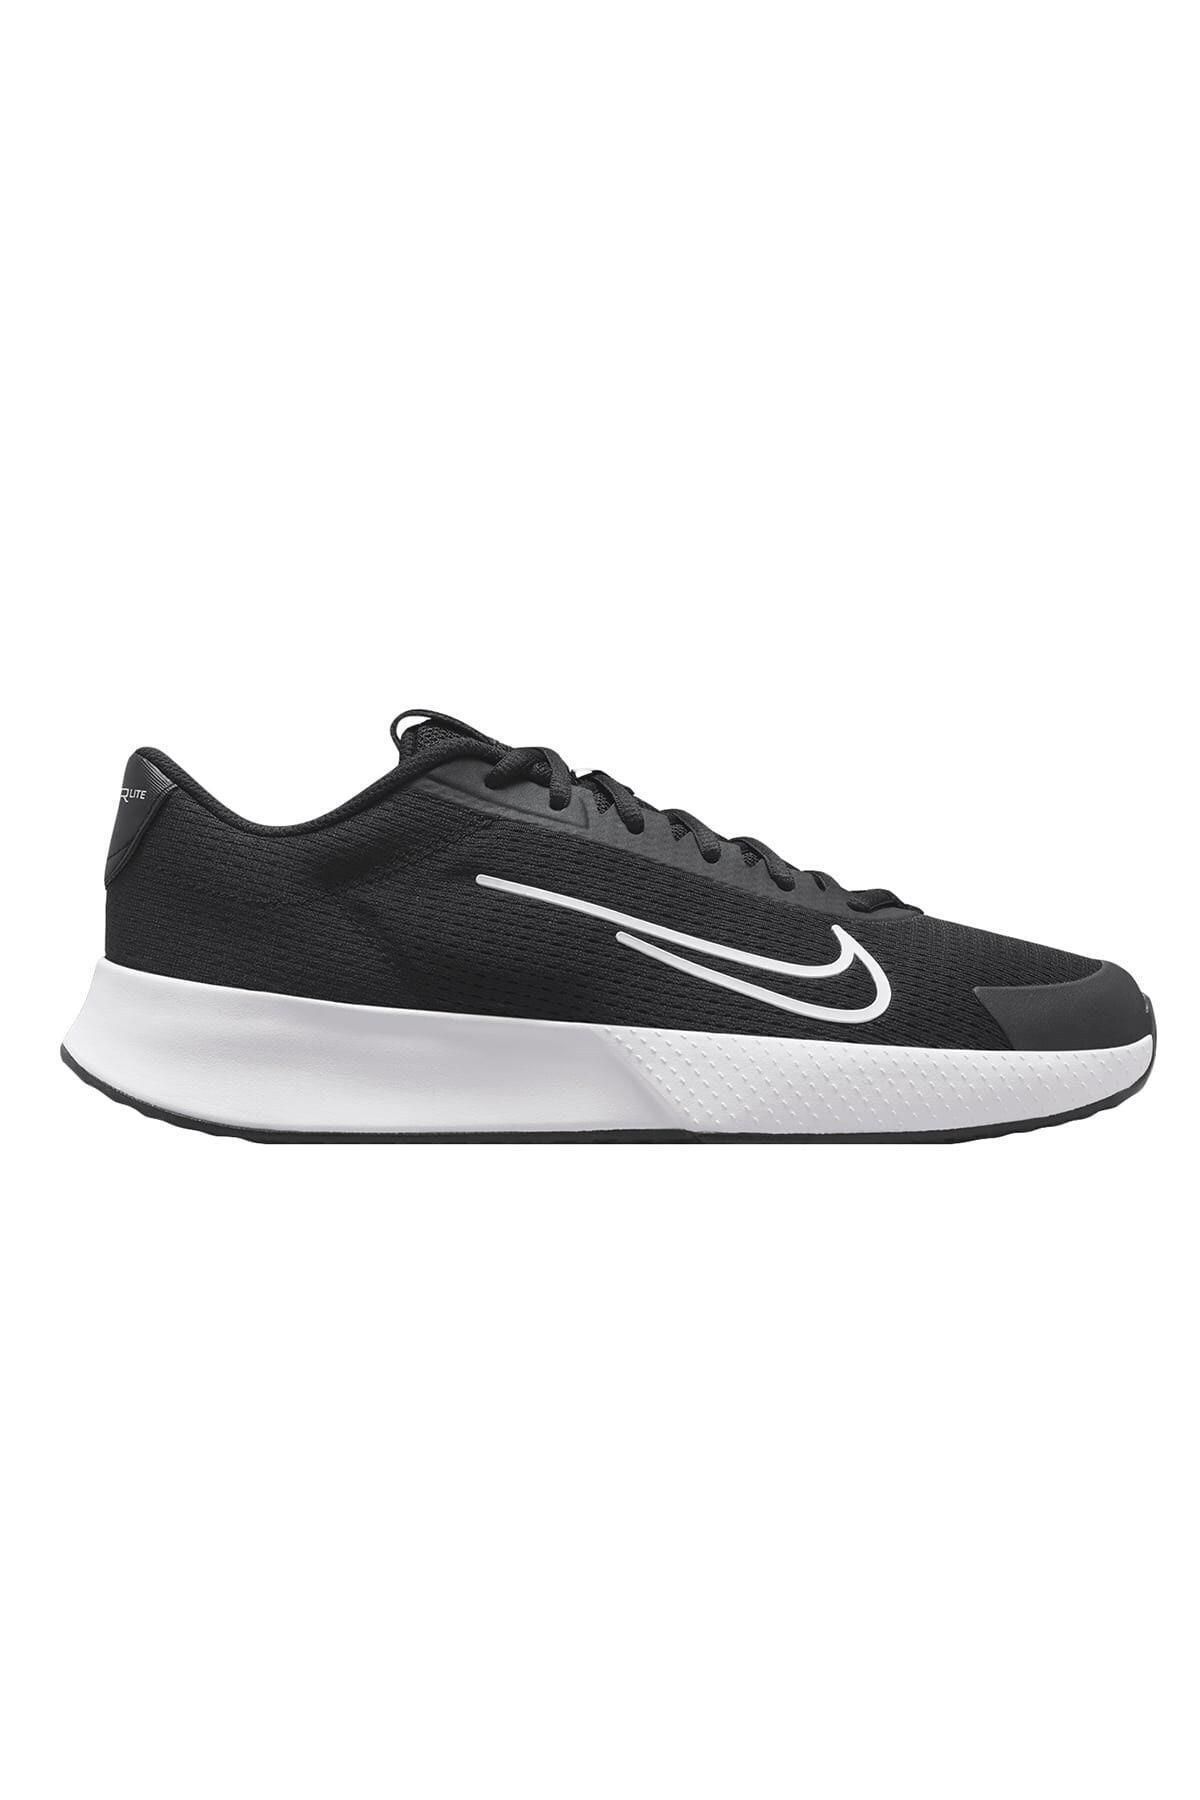 Nike Court Vapor Lite 2 Hc Dv2018-001 Siyah Erkek Tenis Spor Ayakkabı